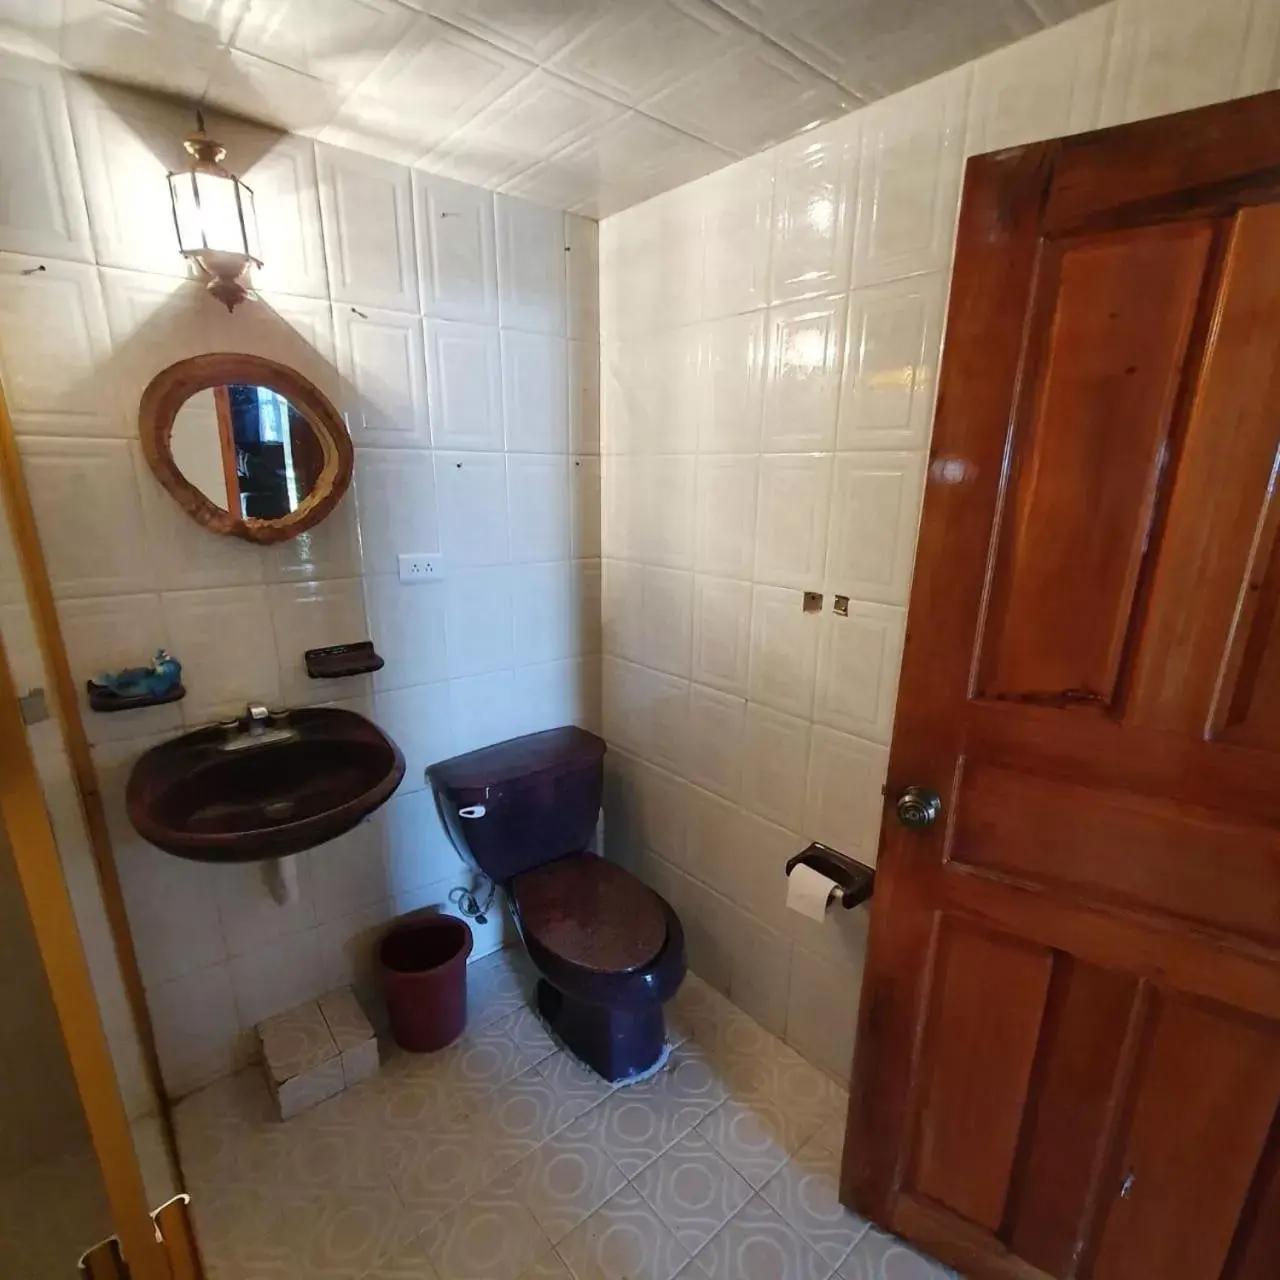 Bathroom in Cabañas Morales